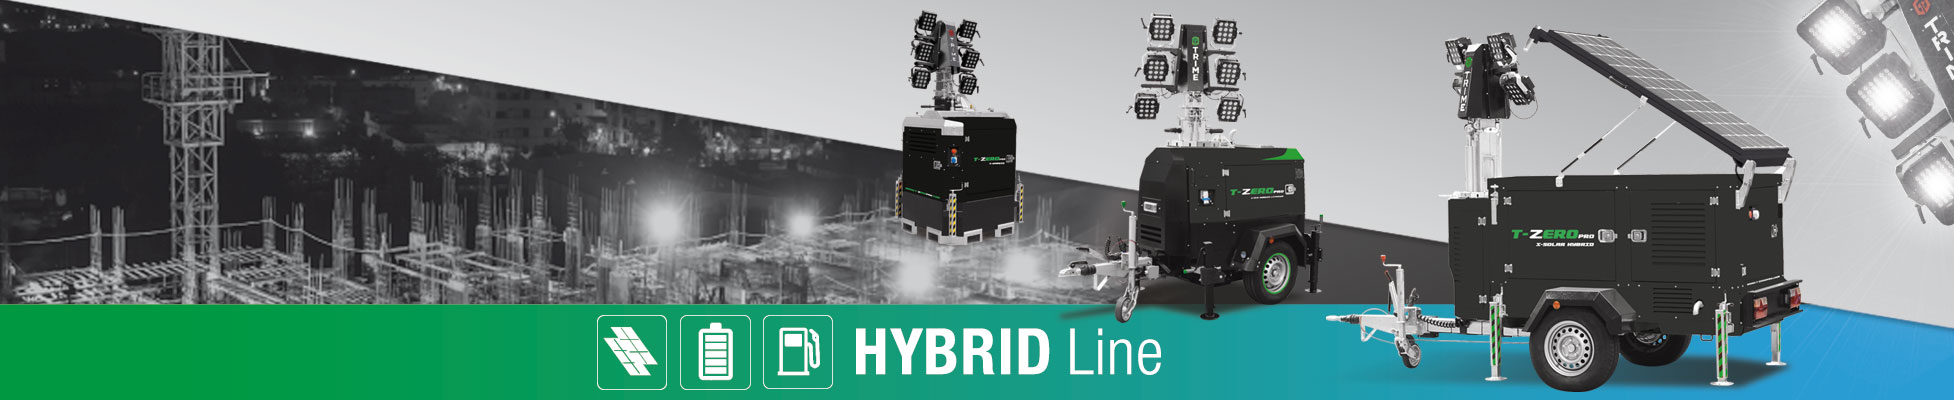 Hybrid Line